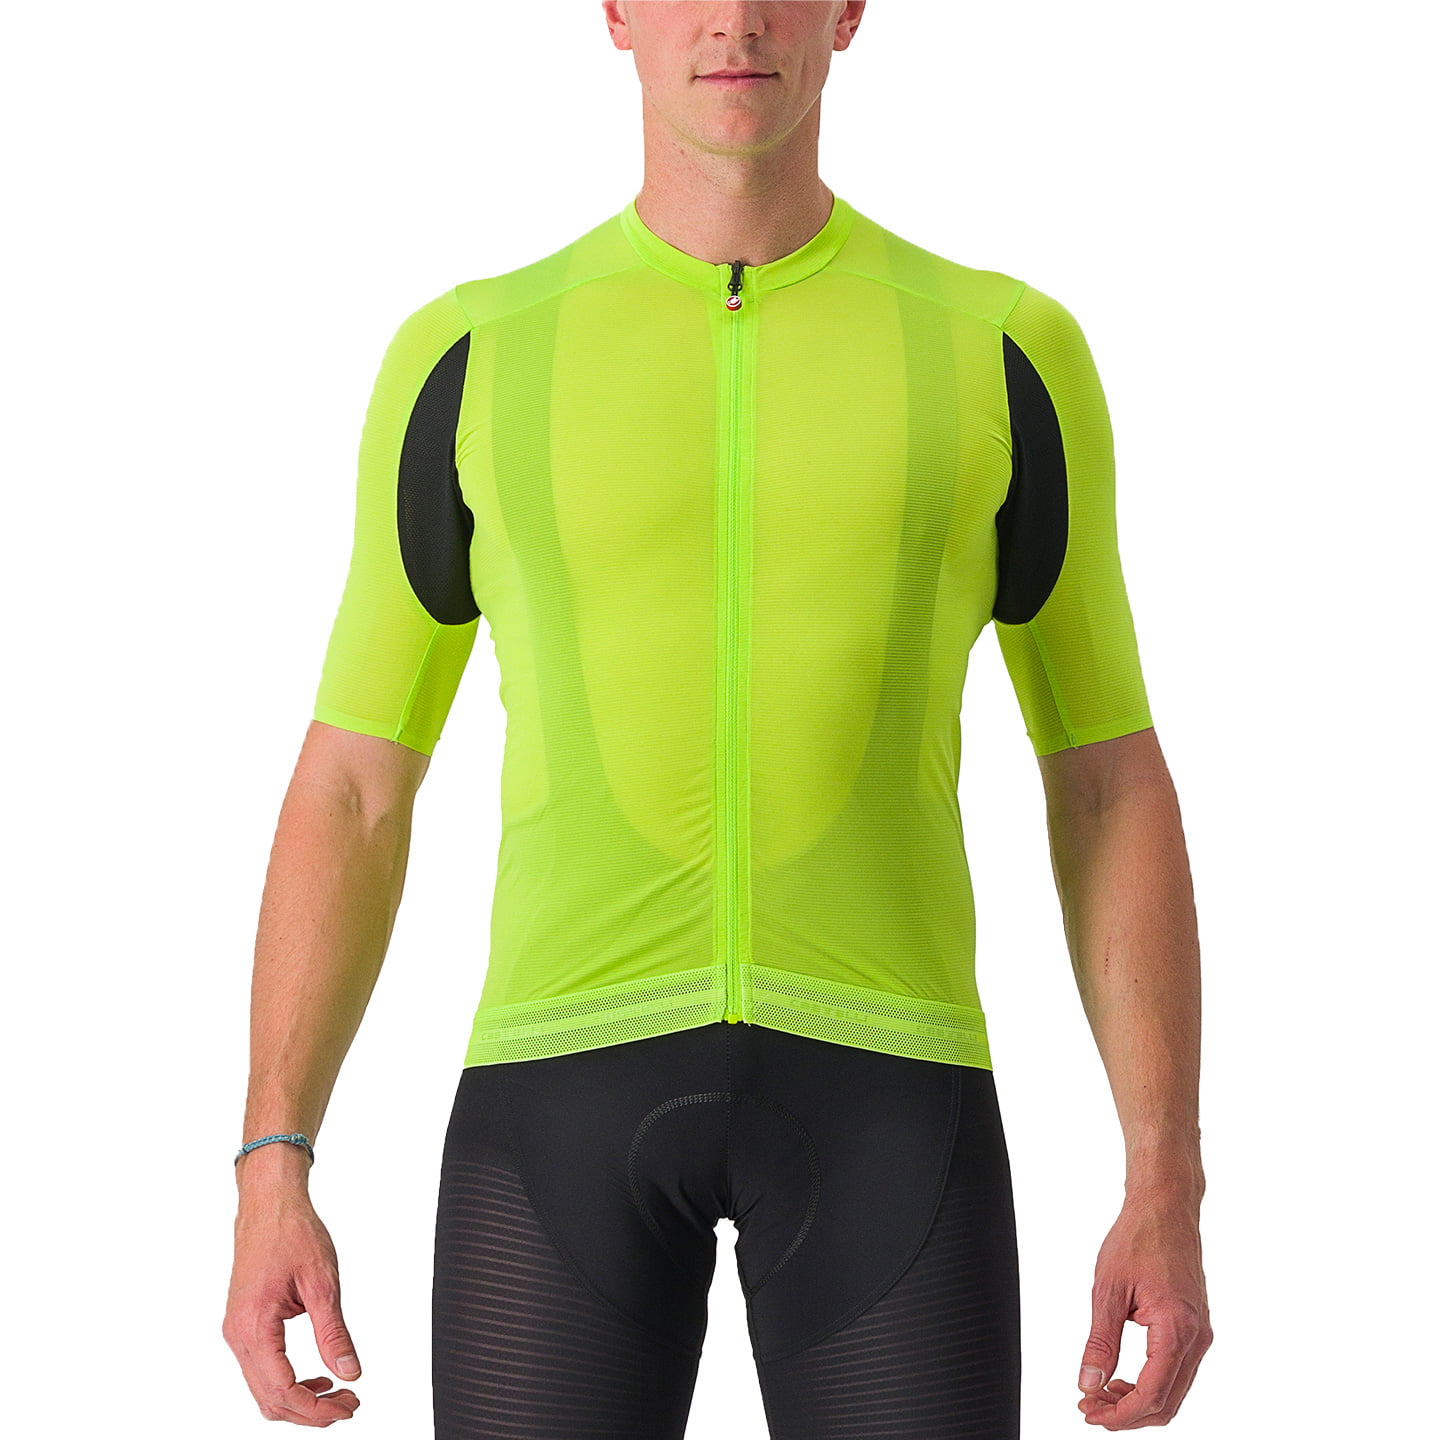 CASTELLI Superleggera 3 Short Sleeve Jersey Short Sleeve Jersey, for men, size S, Cycling jersey, Cycling clothing